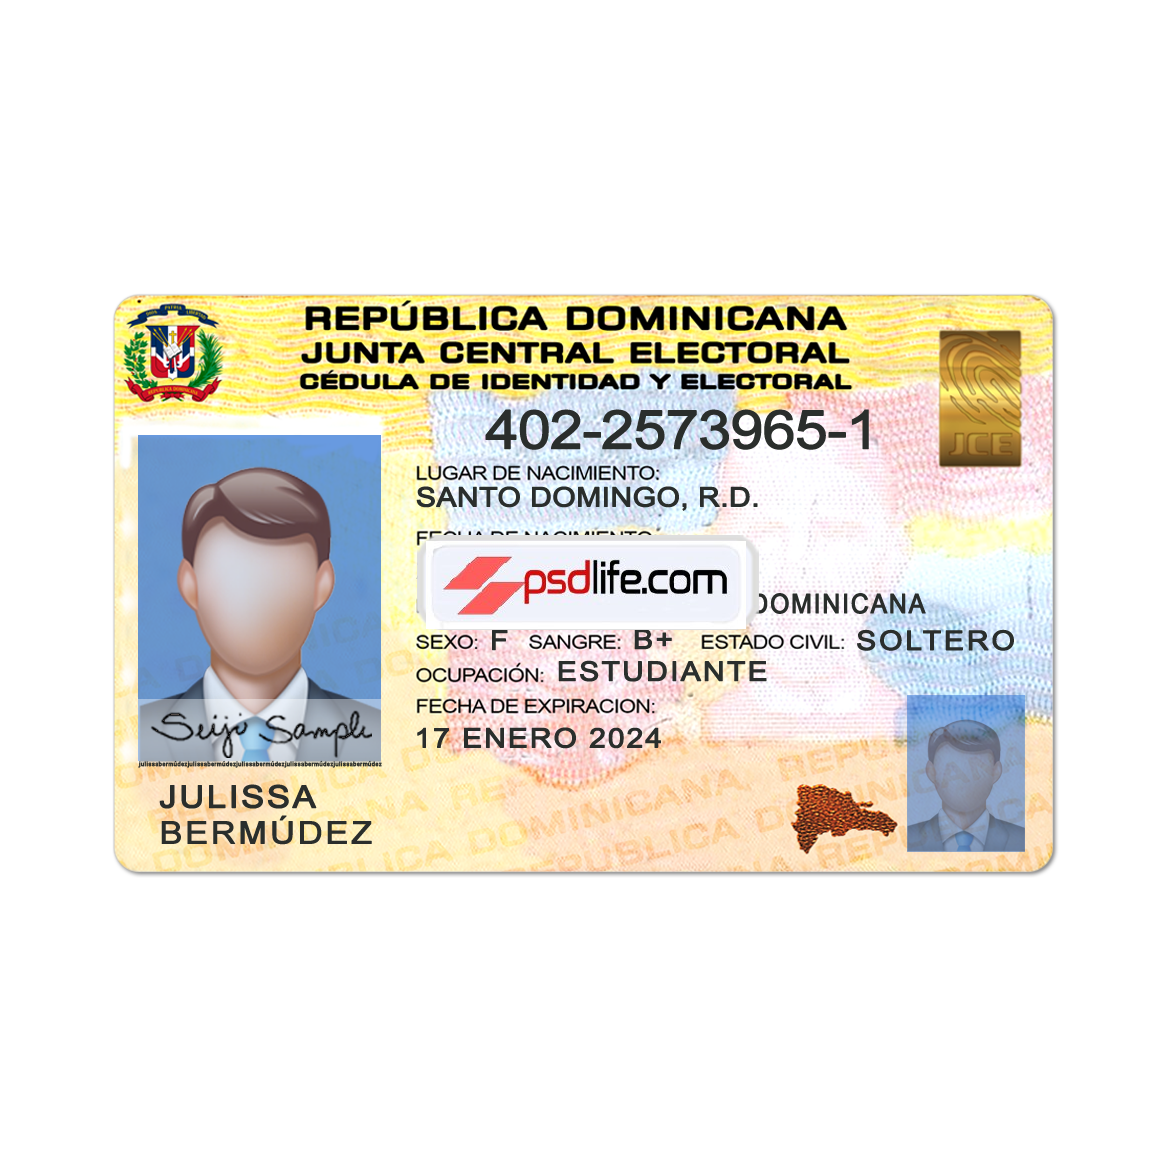 Dominican Republic Id card psd Fully editable photoshop template | Dominican Republic Id card psd Template free download | Plantilla editable psd falsa de tarjeta de identificación de República Dominicana